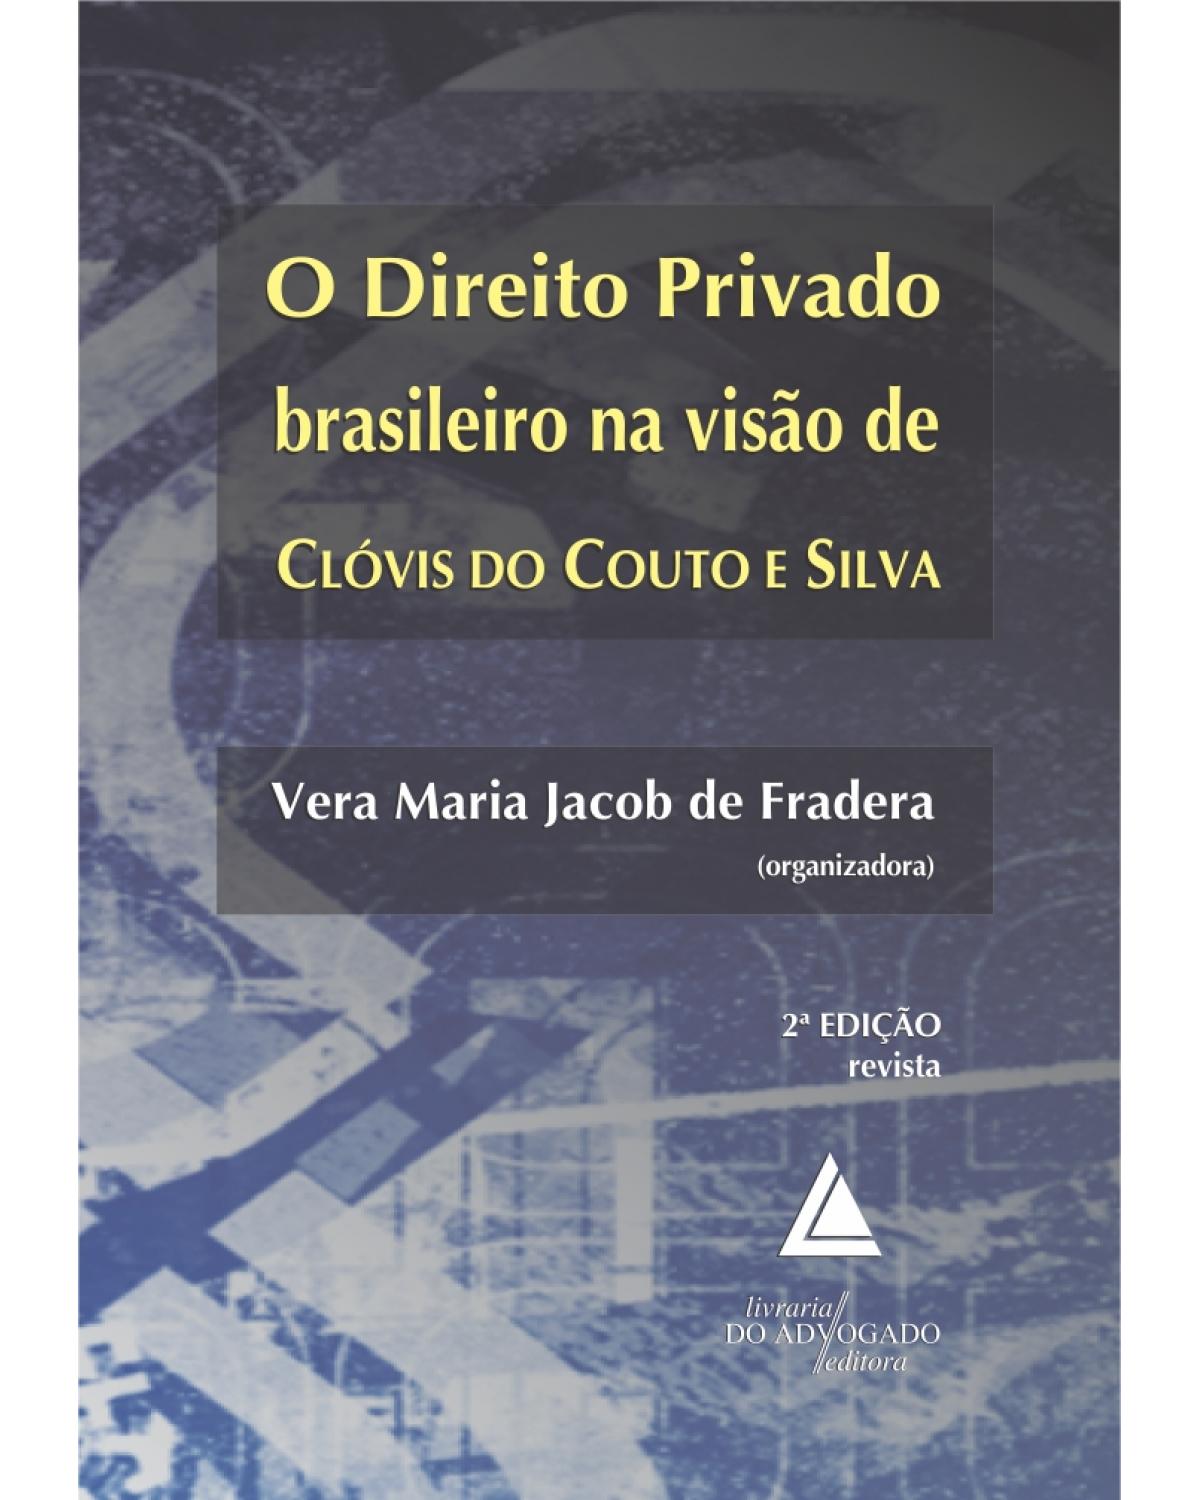 O direito privado brasileiro na visão de Clóvis do Couto e Silva - 2ª Edição